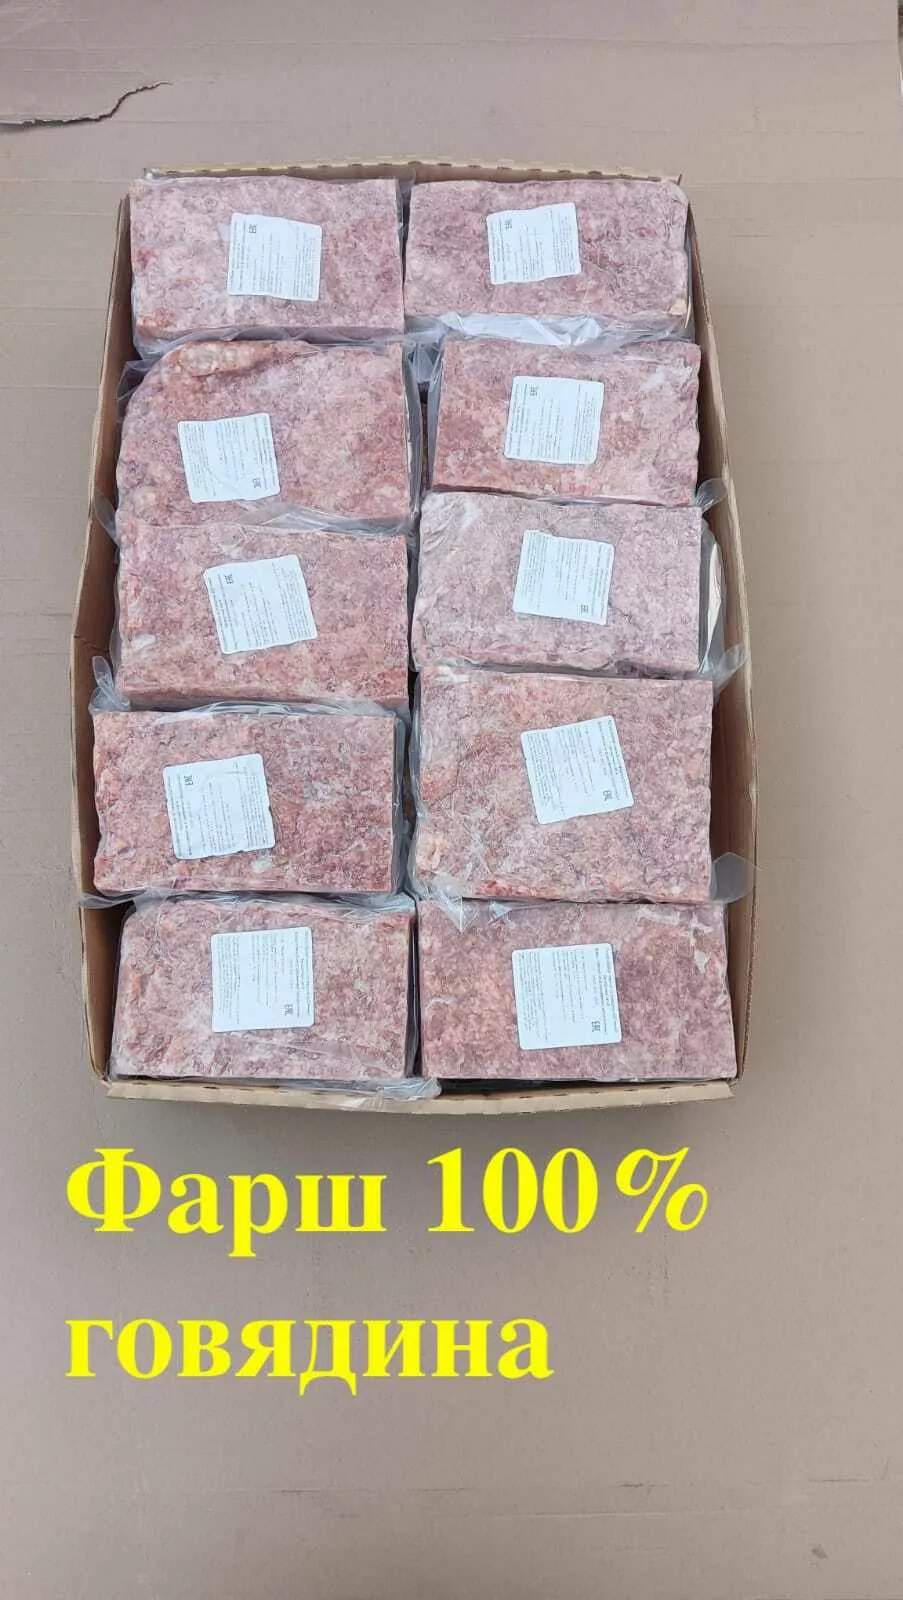 фарш говяжий халяль от 329 руб. в Москве и Московской области 5